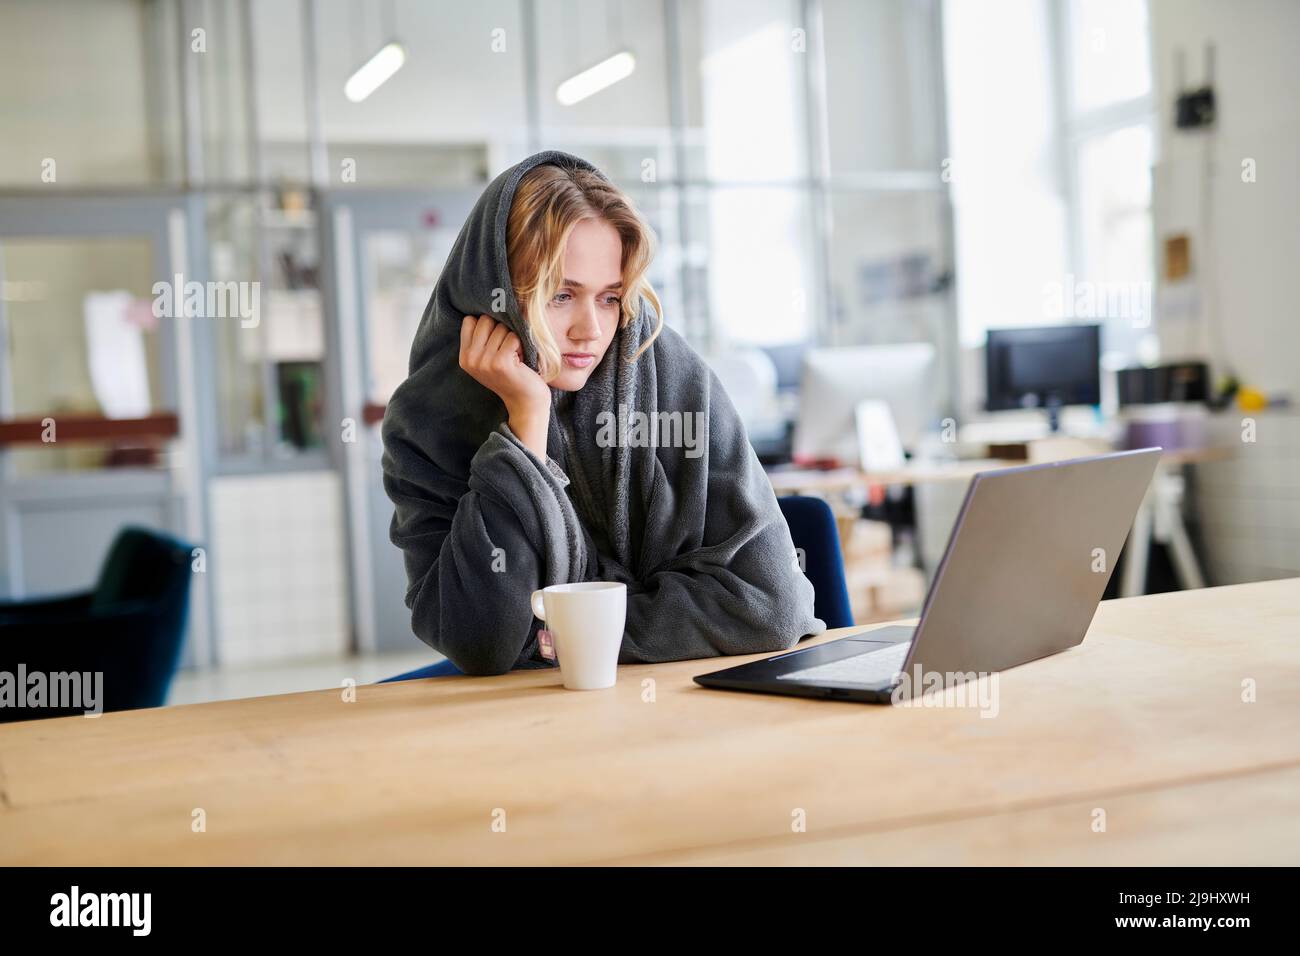 Jeune femme en confortable chaise longue assise au bureau avec ordinateur portable Banque D'Images